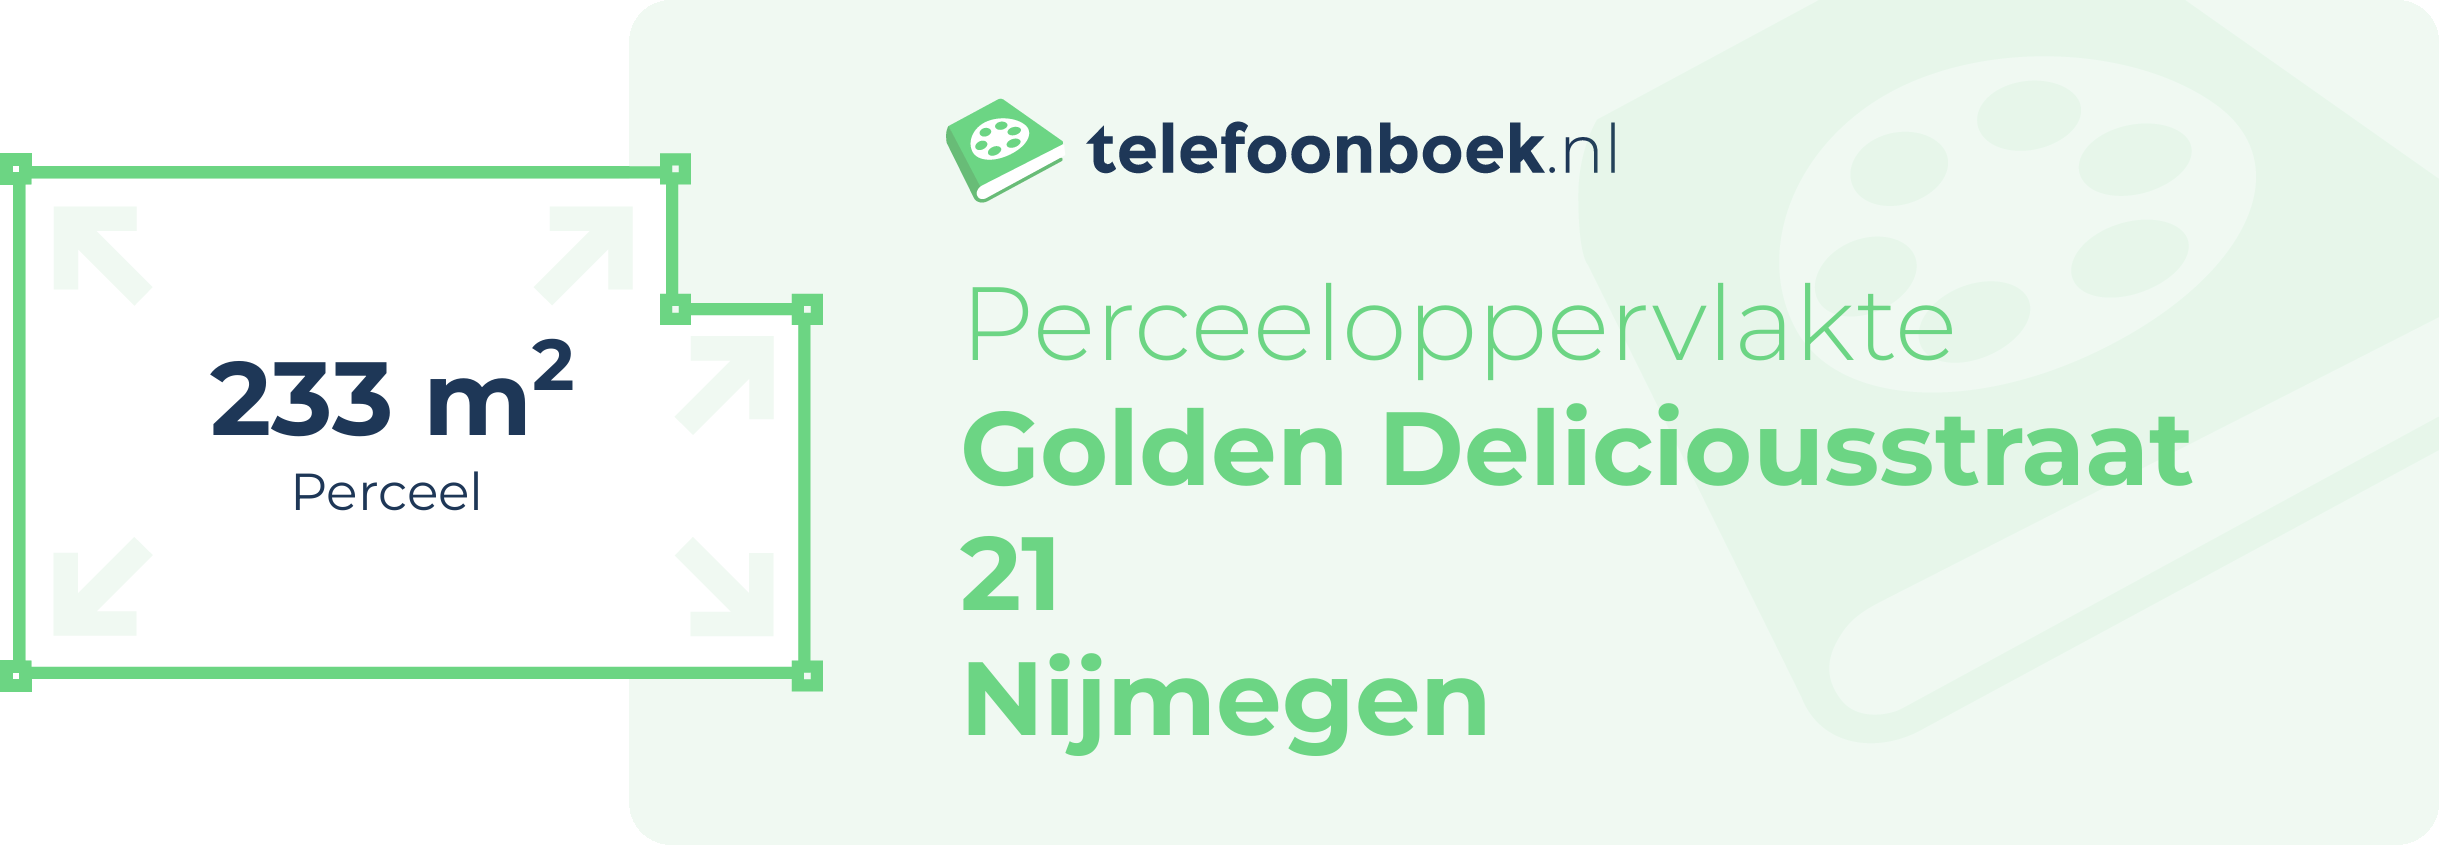 Perceeloppervlakte Golden Deliciousstraat 21 Nijmegen